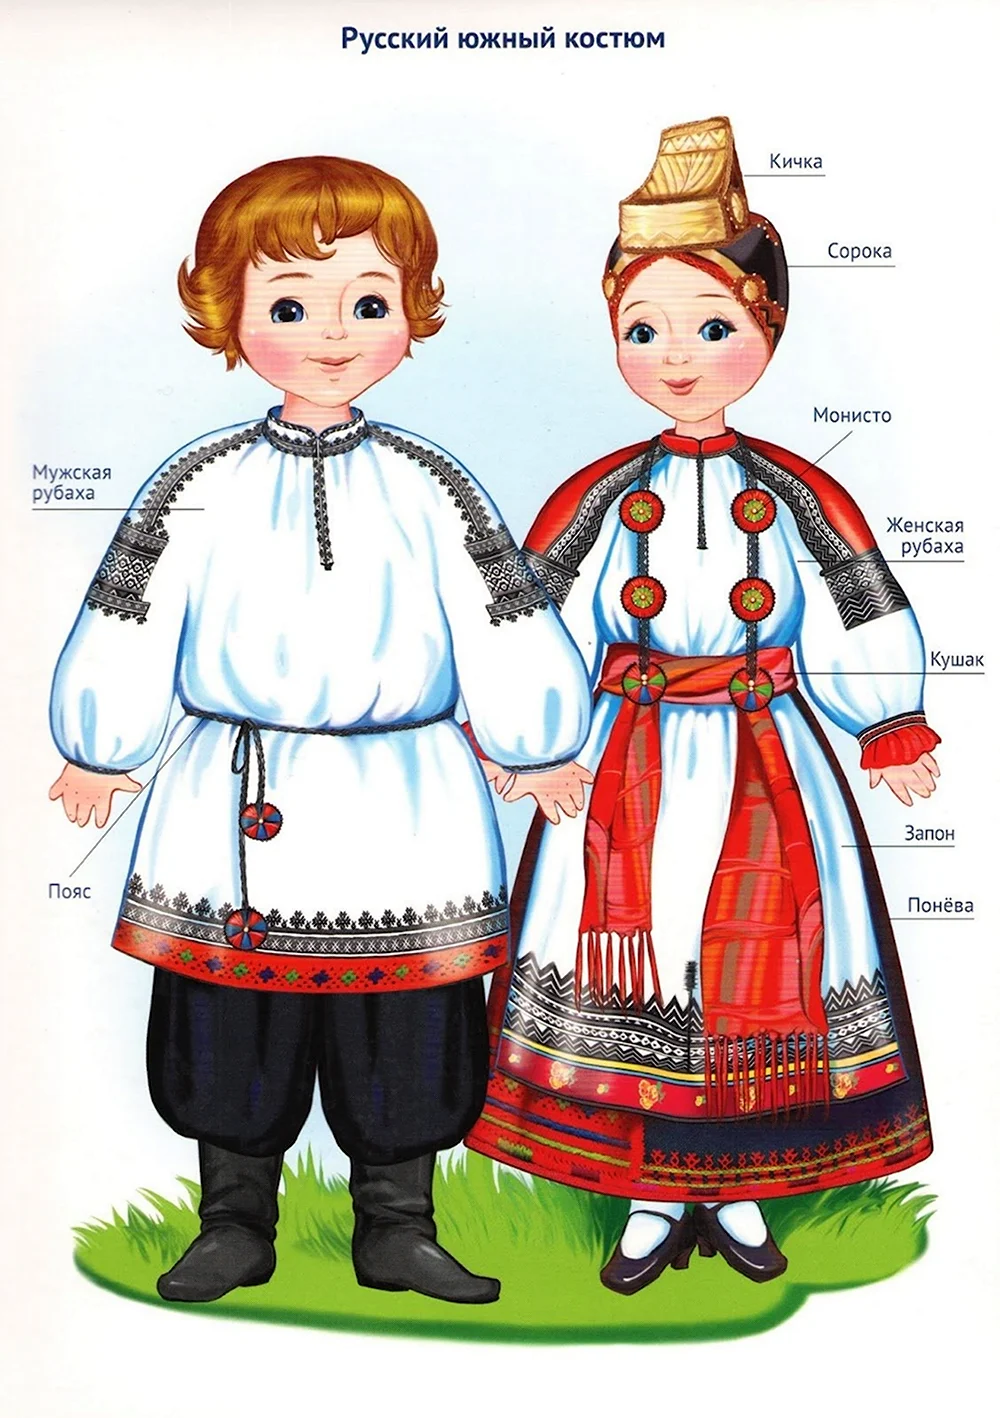 Национальный костюм народ России Башкирцев